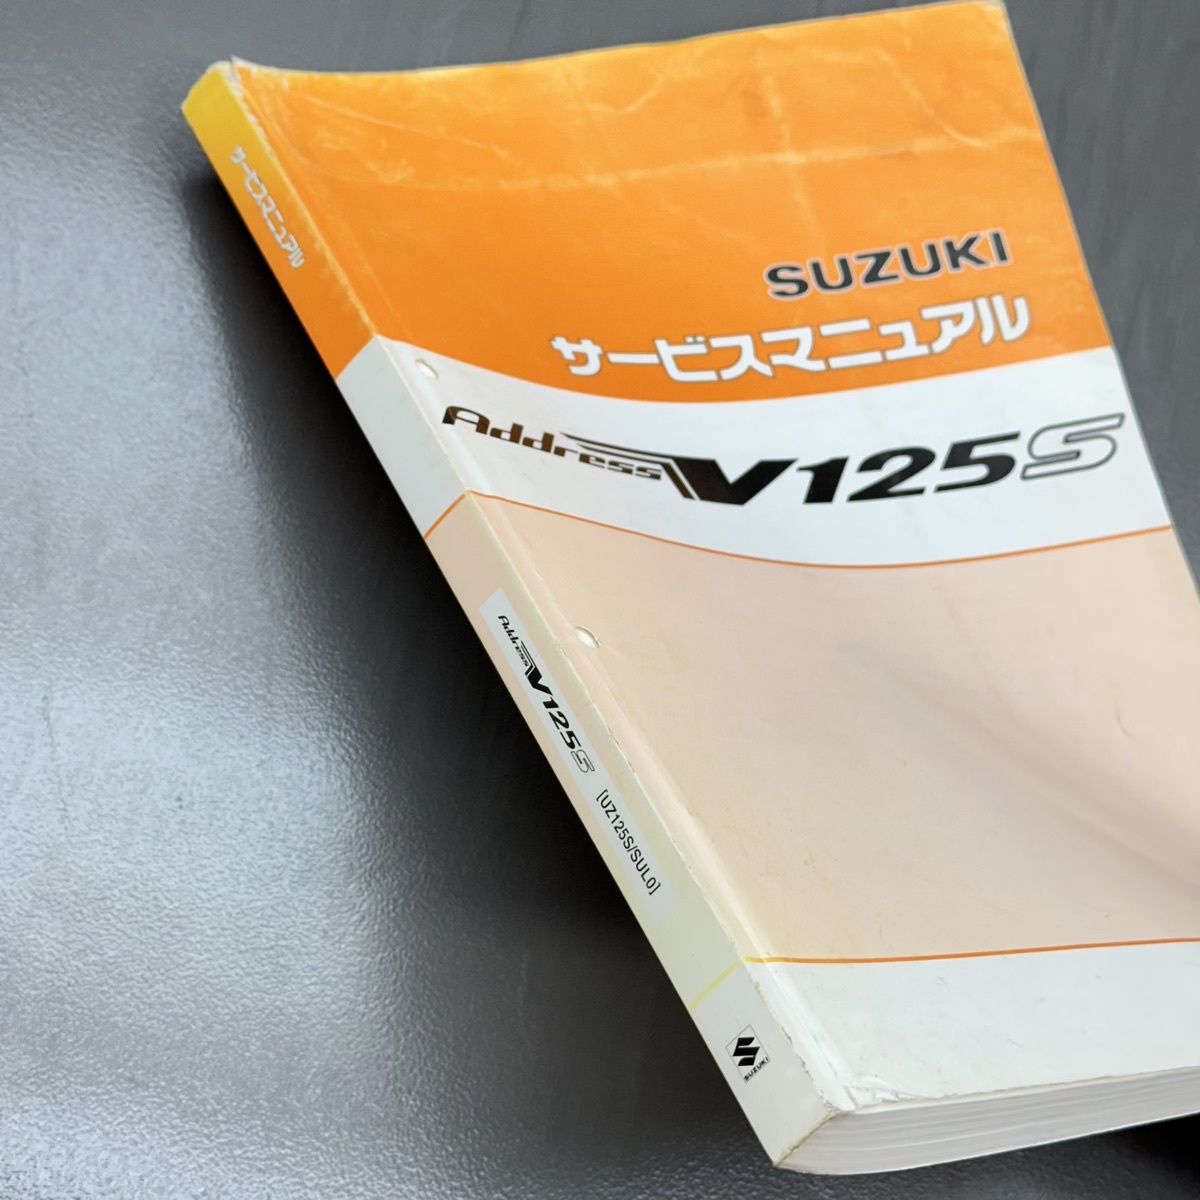  Suzuki адрес V125S UZ125 SL0/SUL0 EBJ-CF4MA оригинальный руководство по обслуживанию сервисная книжка приложение комплект SL3 SZL 240123ALN033